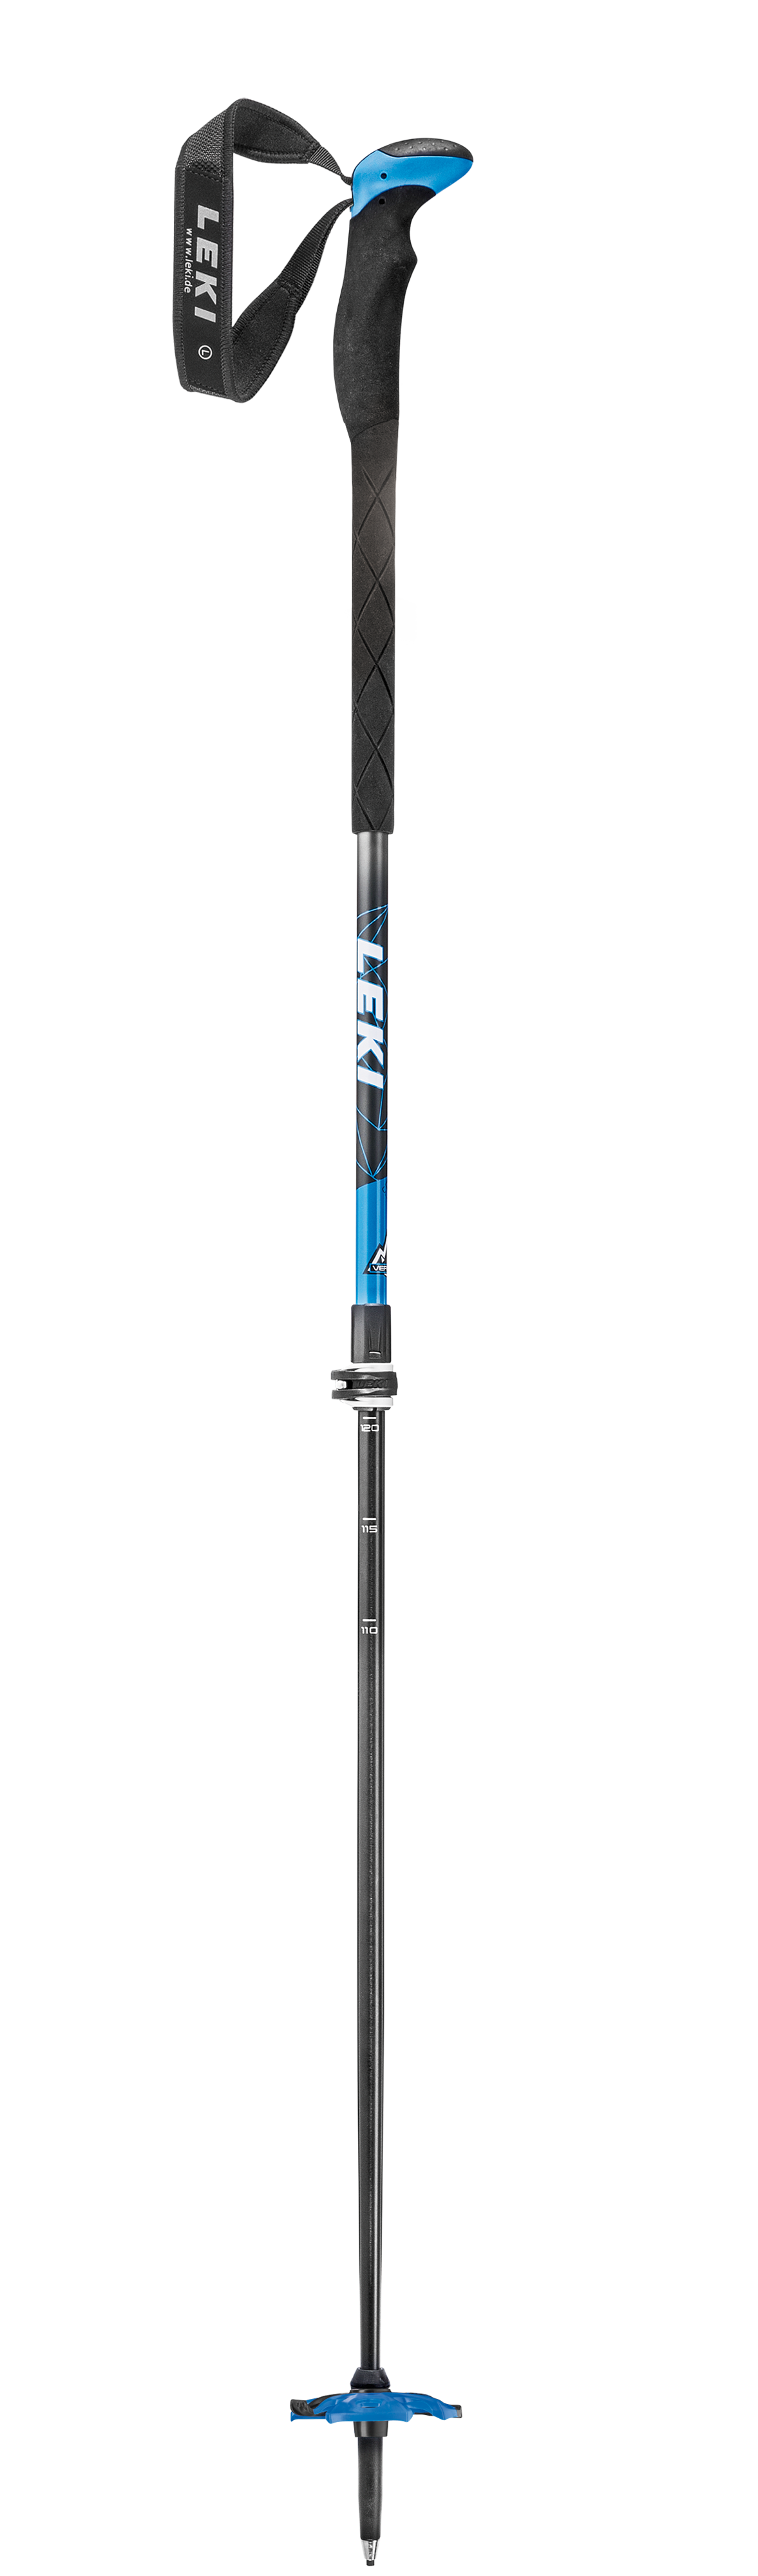 Leki Aergon Lite 2 - Ski poles